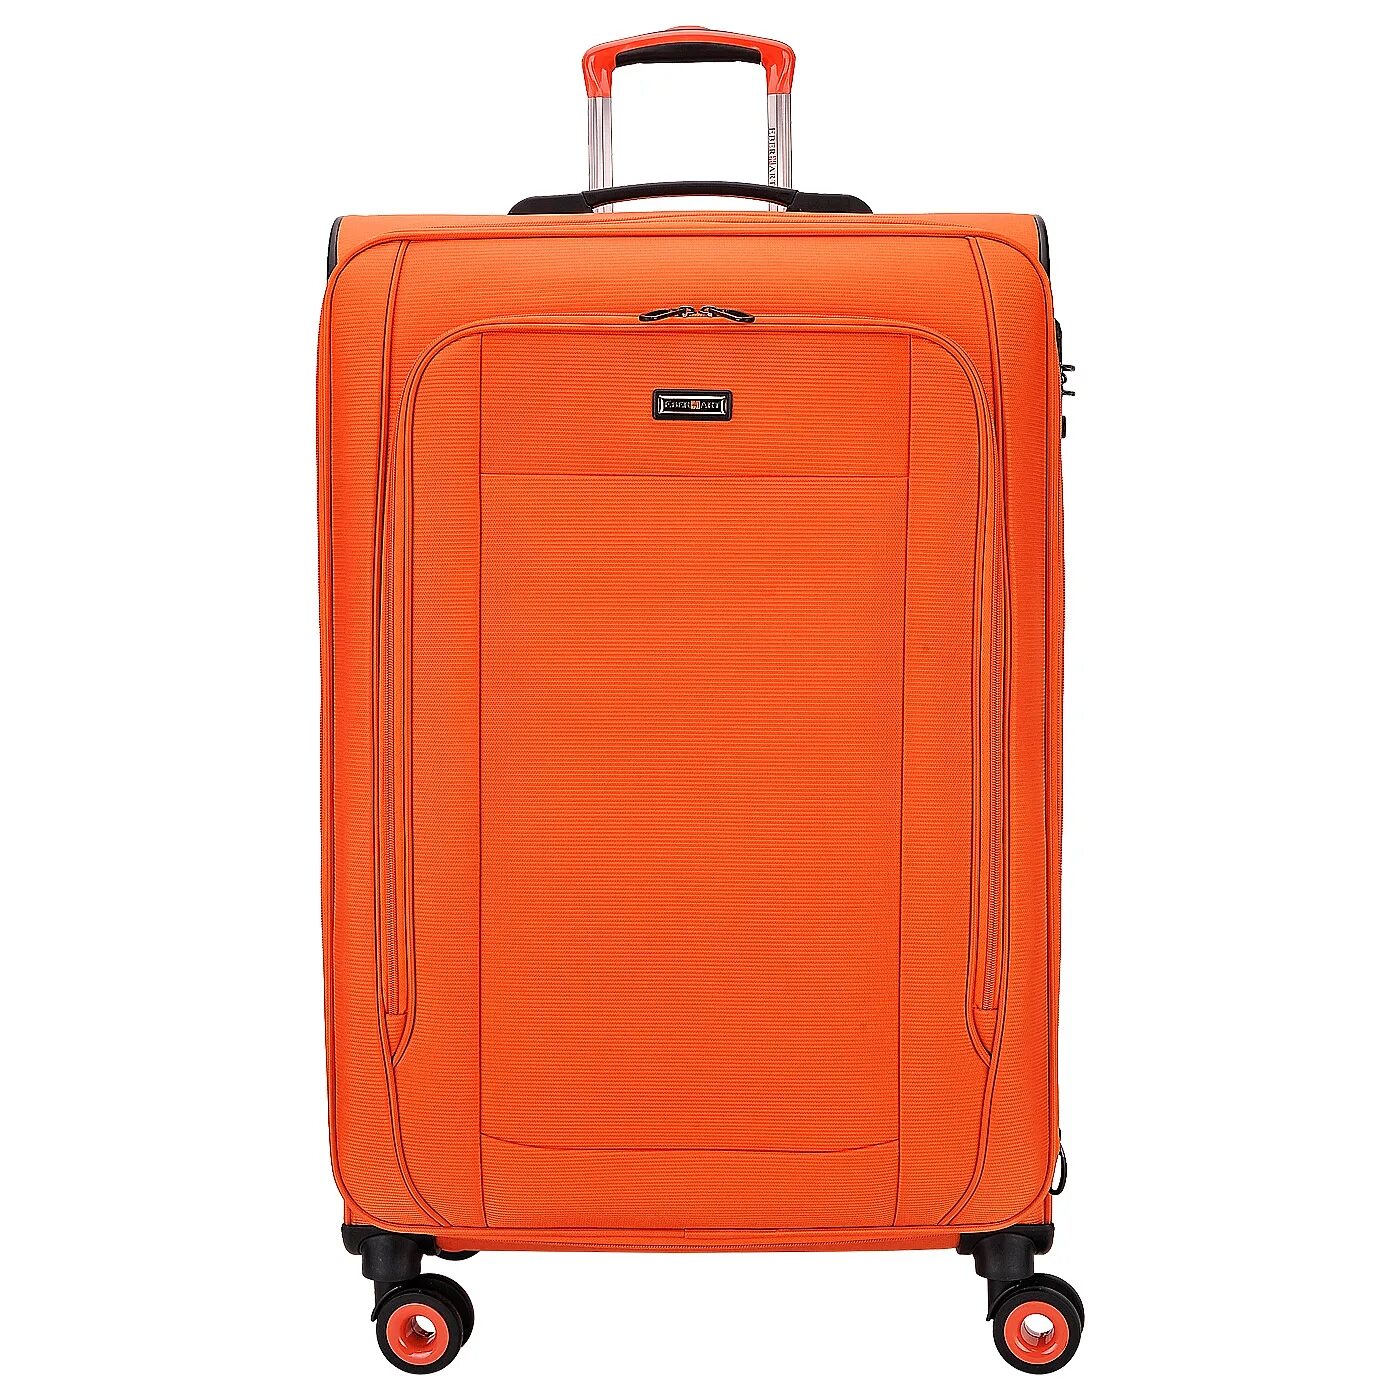 Где купить недорогой чемодан. Чемодан Пьер Карден тканевый оранжевый. Чемодан 15кг оранжевый. Чемодан mares оранжевый. Чемодан Sanzhiniao рыжий gt 1002.